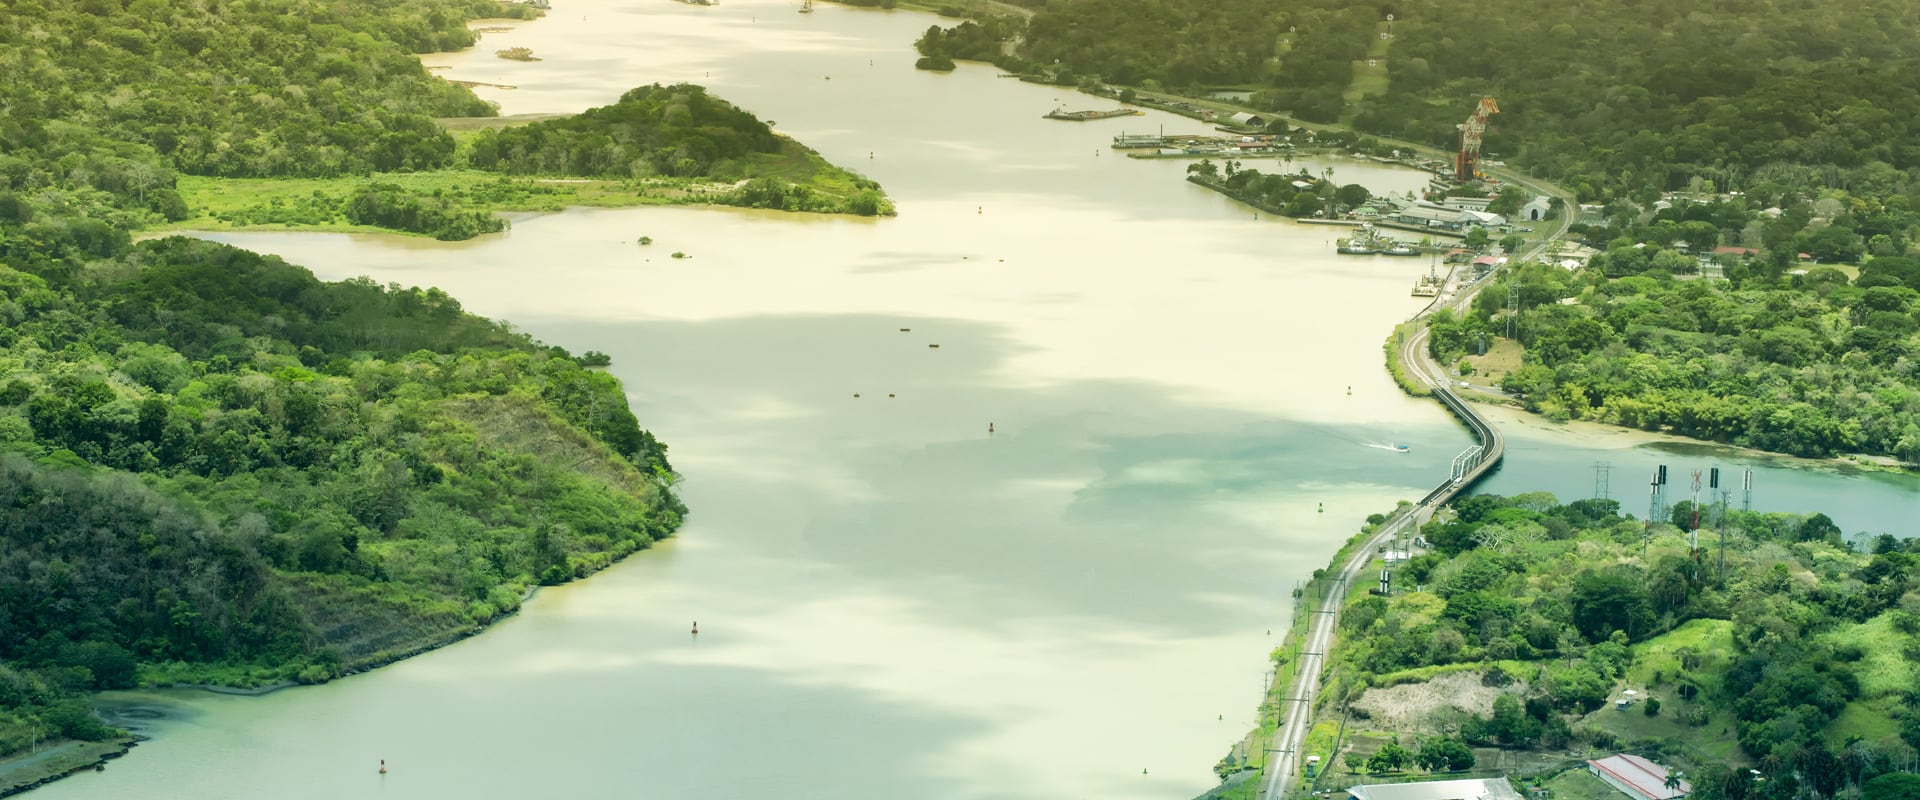 パナマ運河のアドベンチャークルーズ